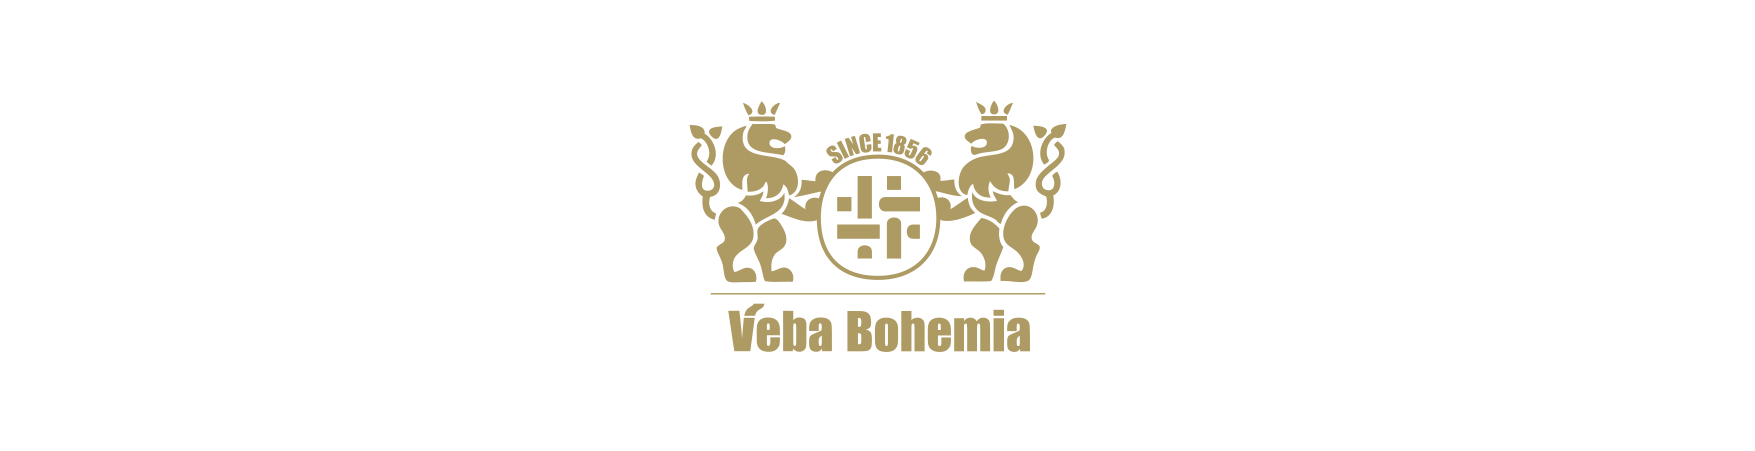 Veba Bohemia